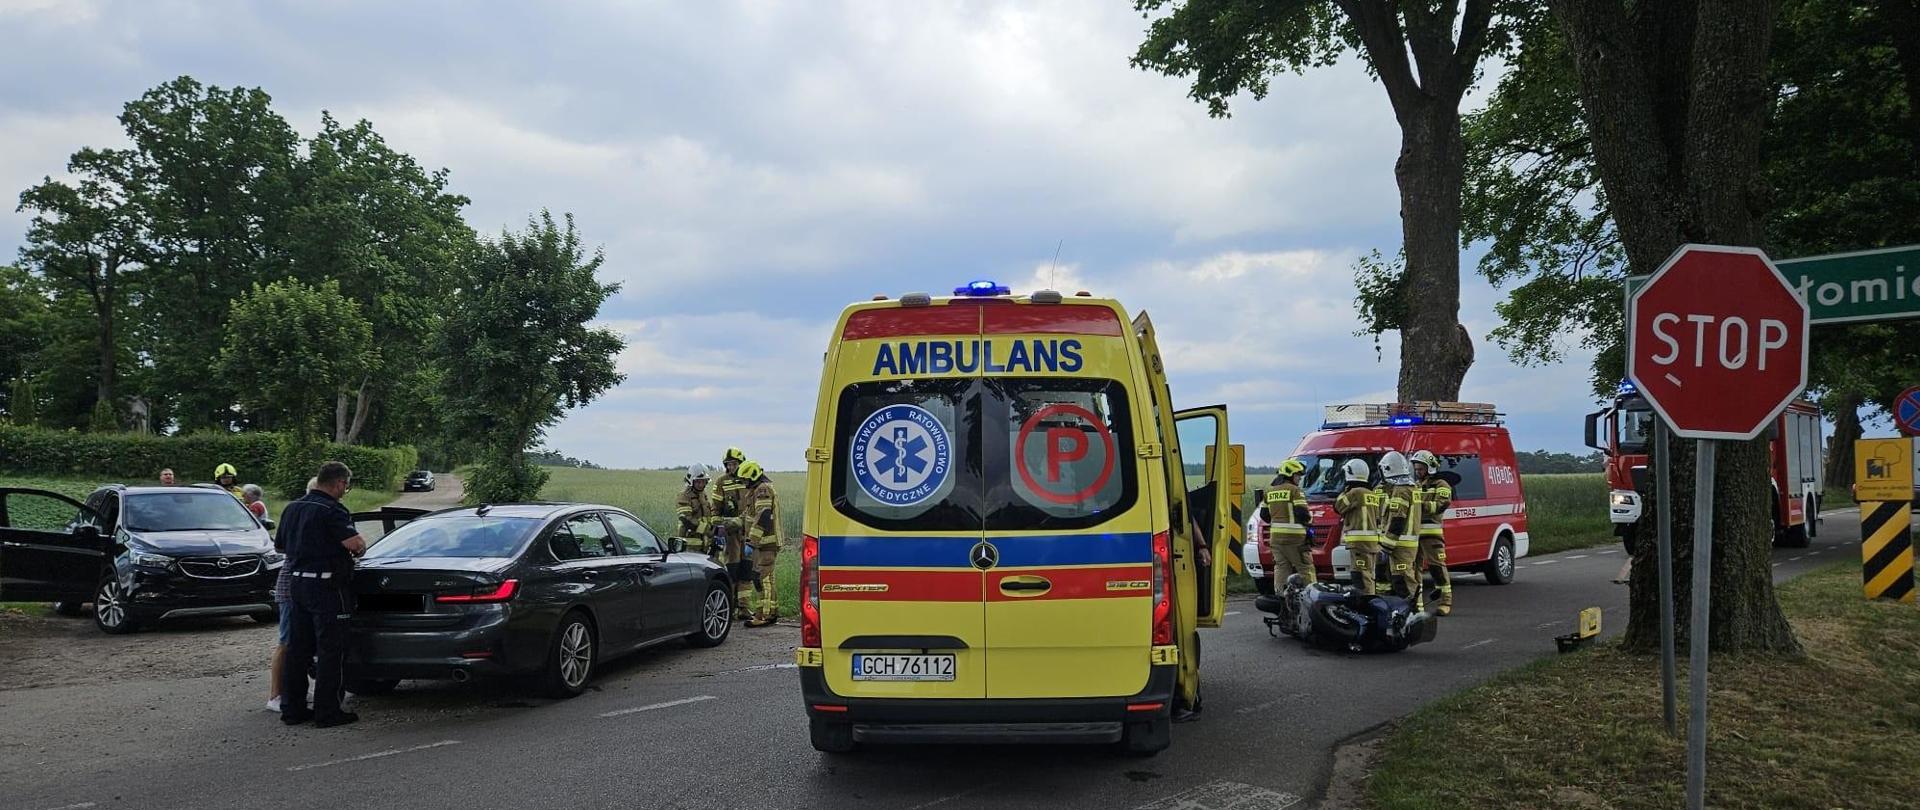 Pochmurny dzień, na pierwszym planie żółta karetka pogotowia ratunkowego z czerwonym napisem AMBULANS, karetka ma włączone niebieskie światła ostrzegawcze, stoi na środku drogi. Z prawej strony widać dwa czerwone samochody Straży Pożarnej na tle, których stoi czterech strażaków ubranych w piaskowe ubrania specjalne oraz białe i żółte hełmy, przed nimi leży motocykl. Z lewej strony na poboczu drogi stoją dwa czarne samochody, przy których stoją kilkuosobowe grupy ludzi. Pola wokół zdarzenia są intensywnie zielone.